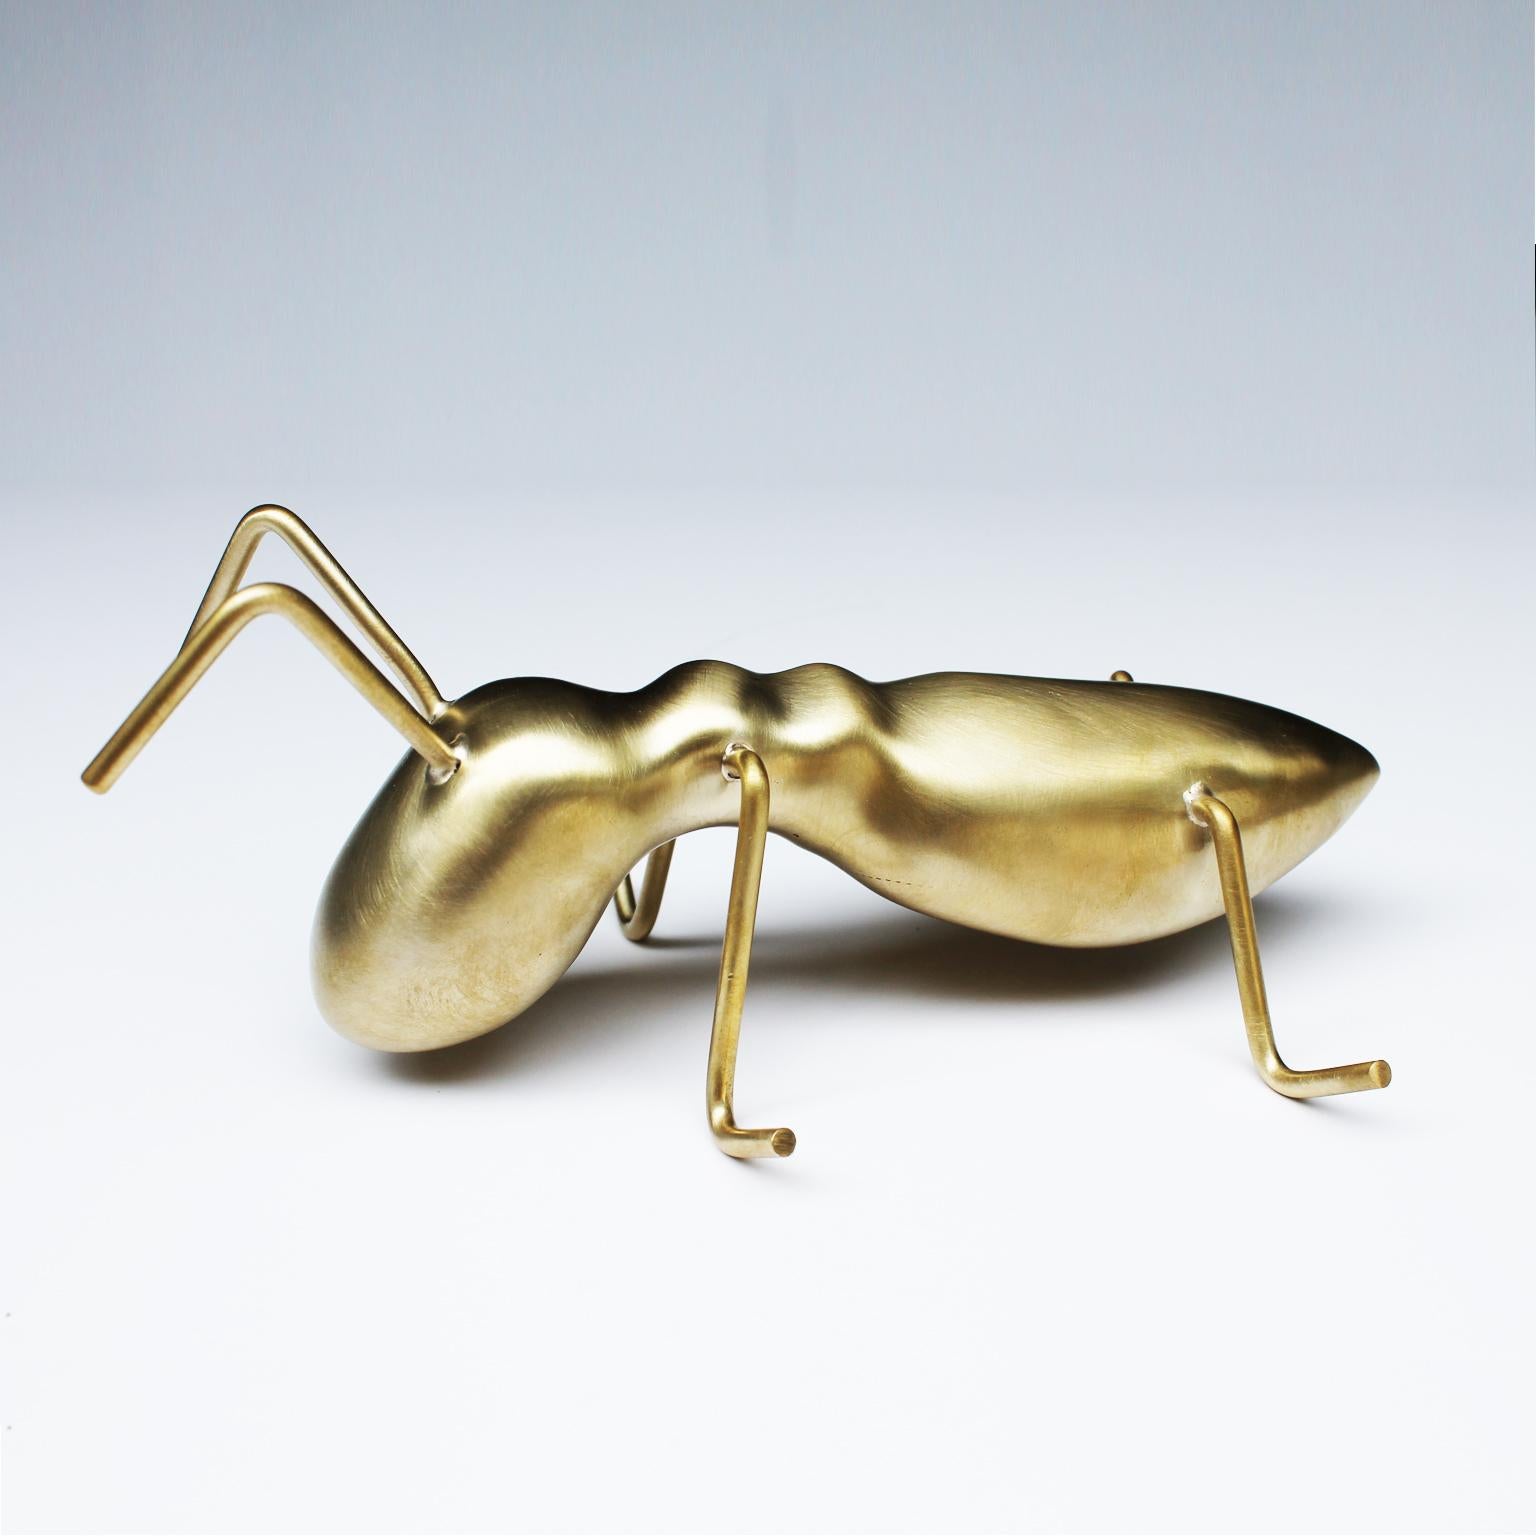 Golden Ant - Contemporary Sculpture by Arozarena De La Fuente